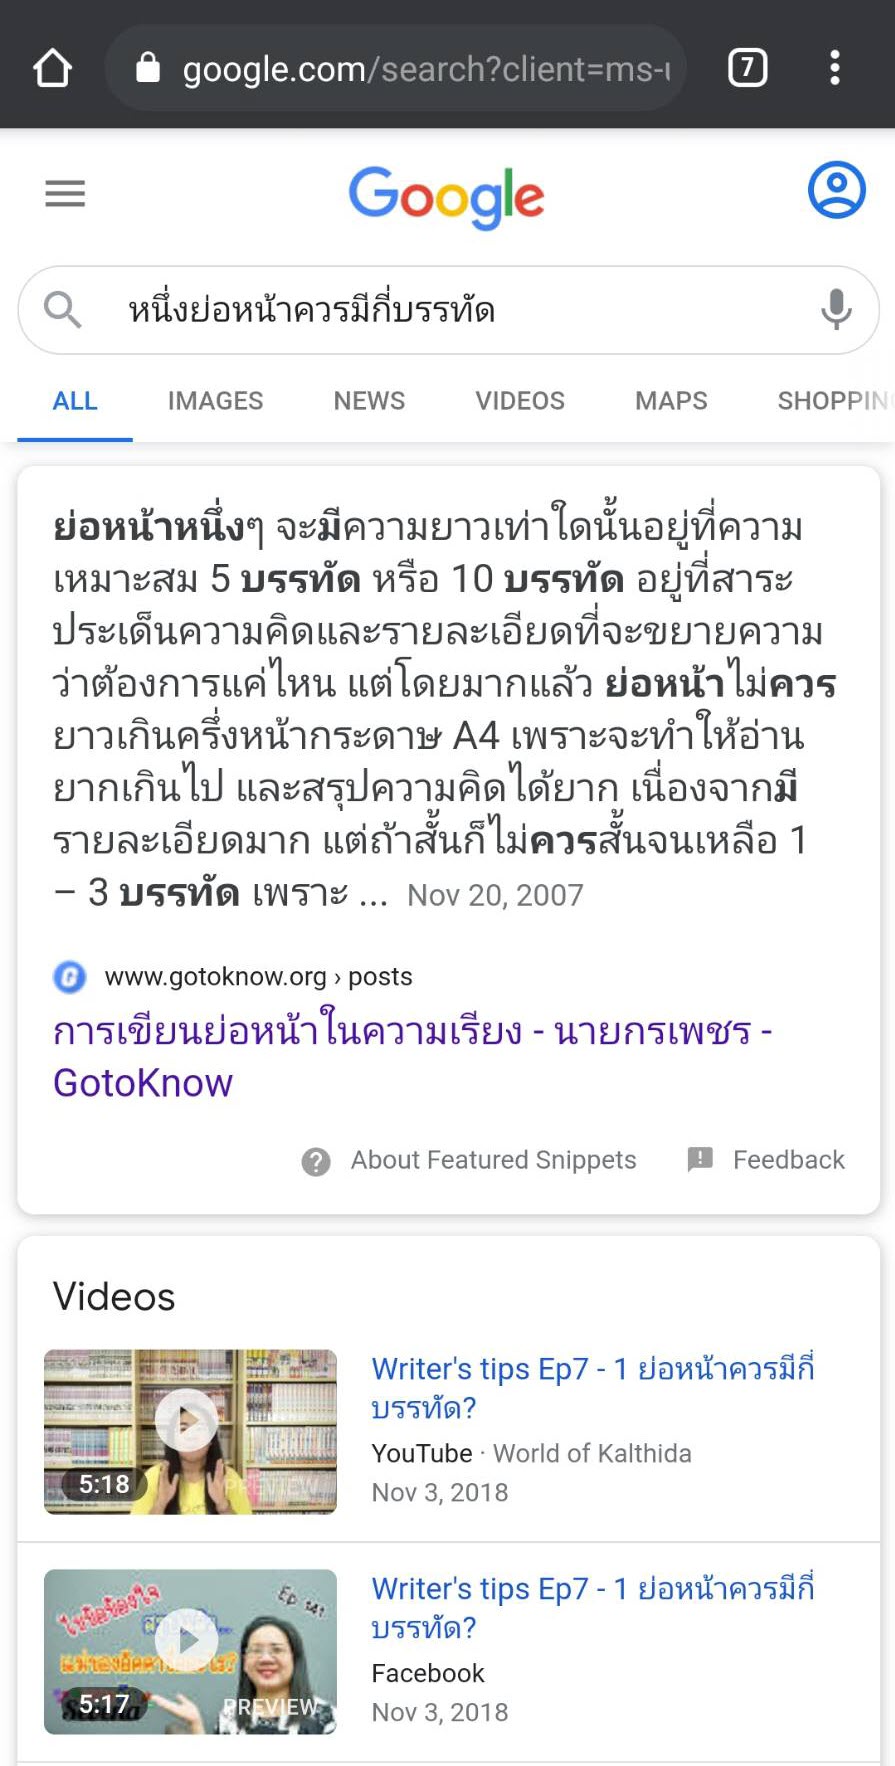 Passage Raking ผลการค้นหาจากข้อความในหน้าเว็บ ภาษาไทย